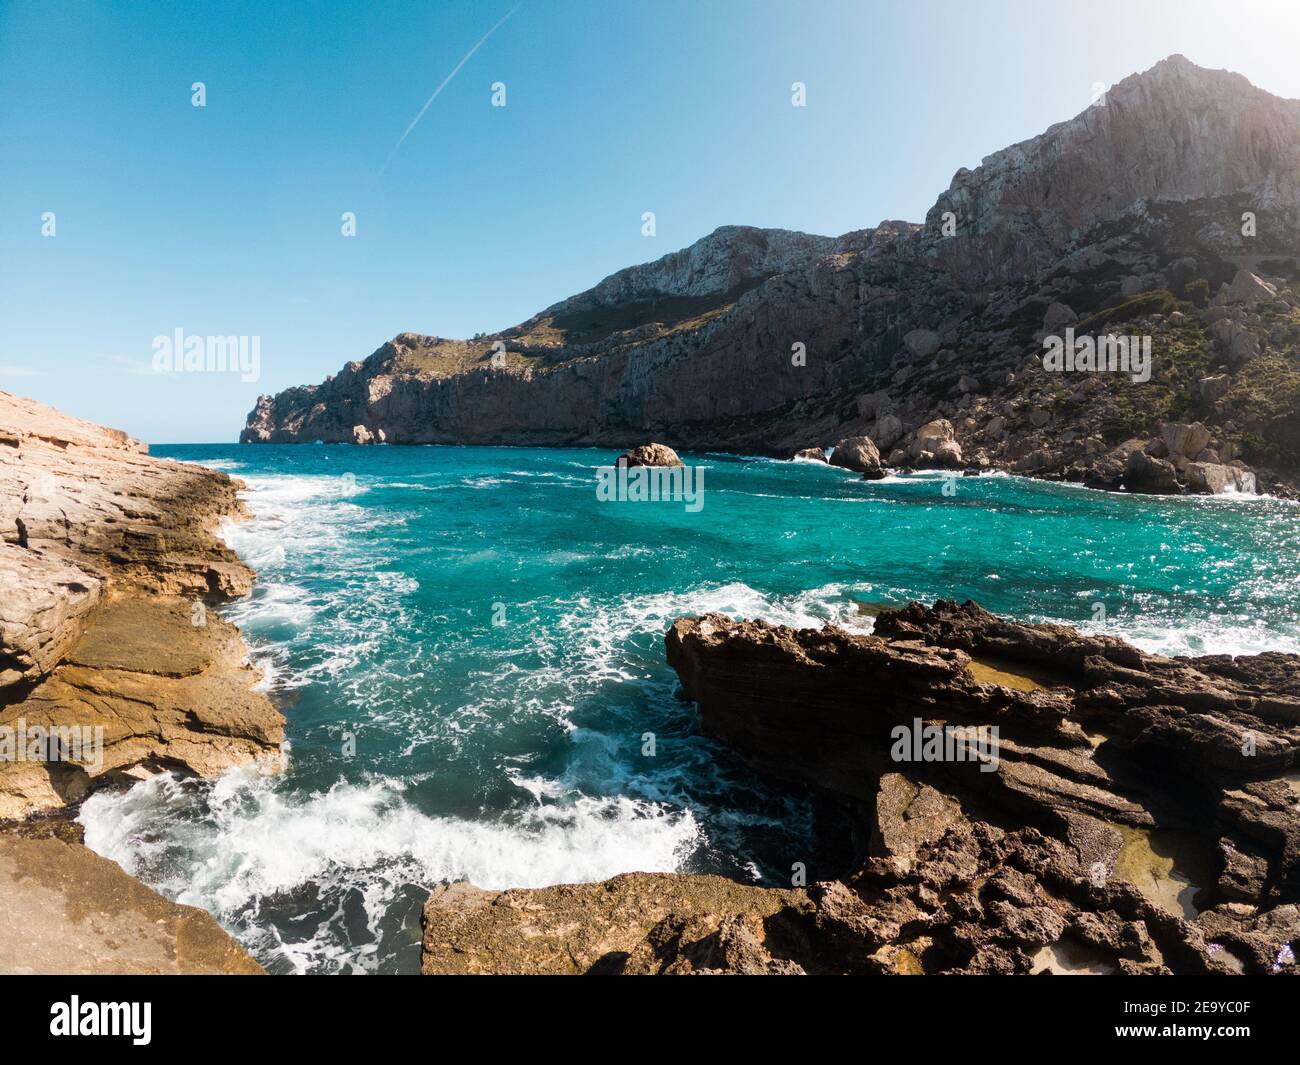 Onde che si infrangono sulla costa rocciosa delle montagne di Maiorca sullo sfondo, giornata di sole, nelle isole Baleari, Spagna Foto Stock